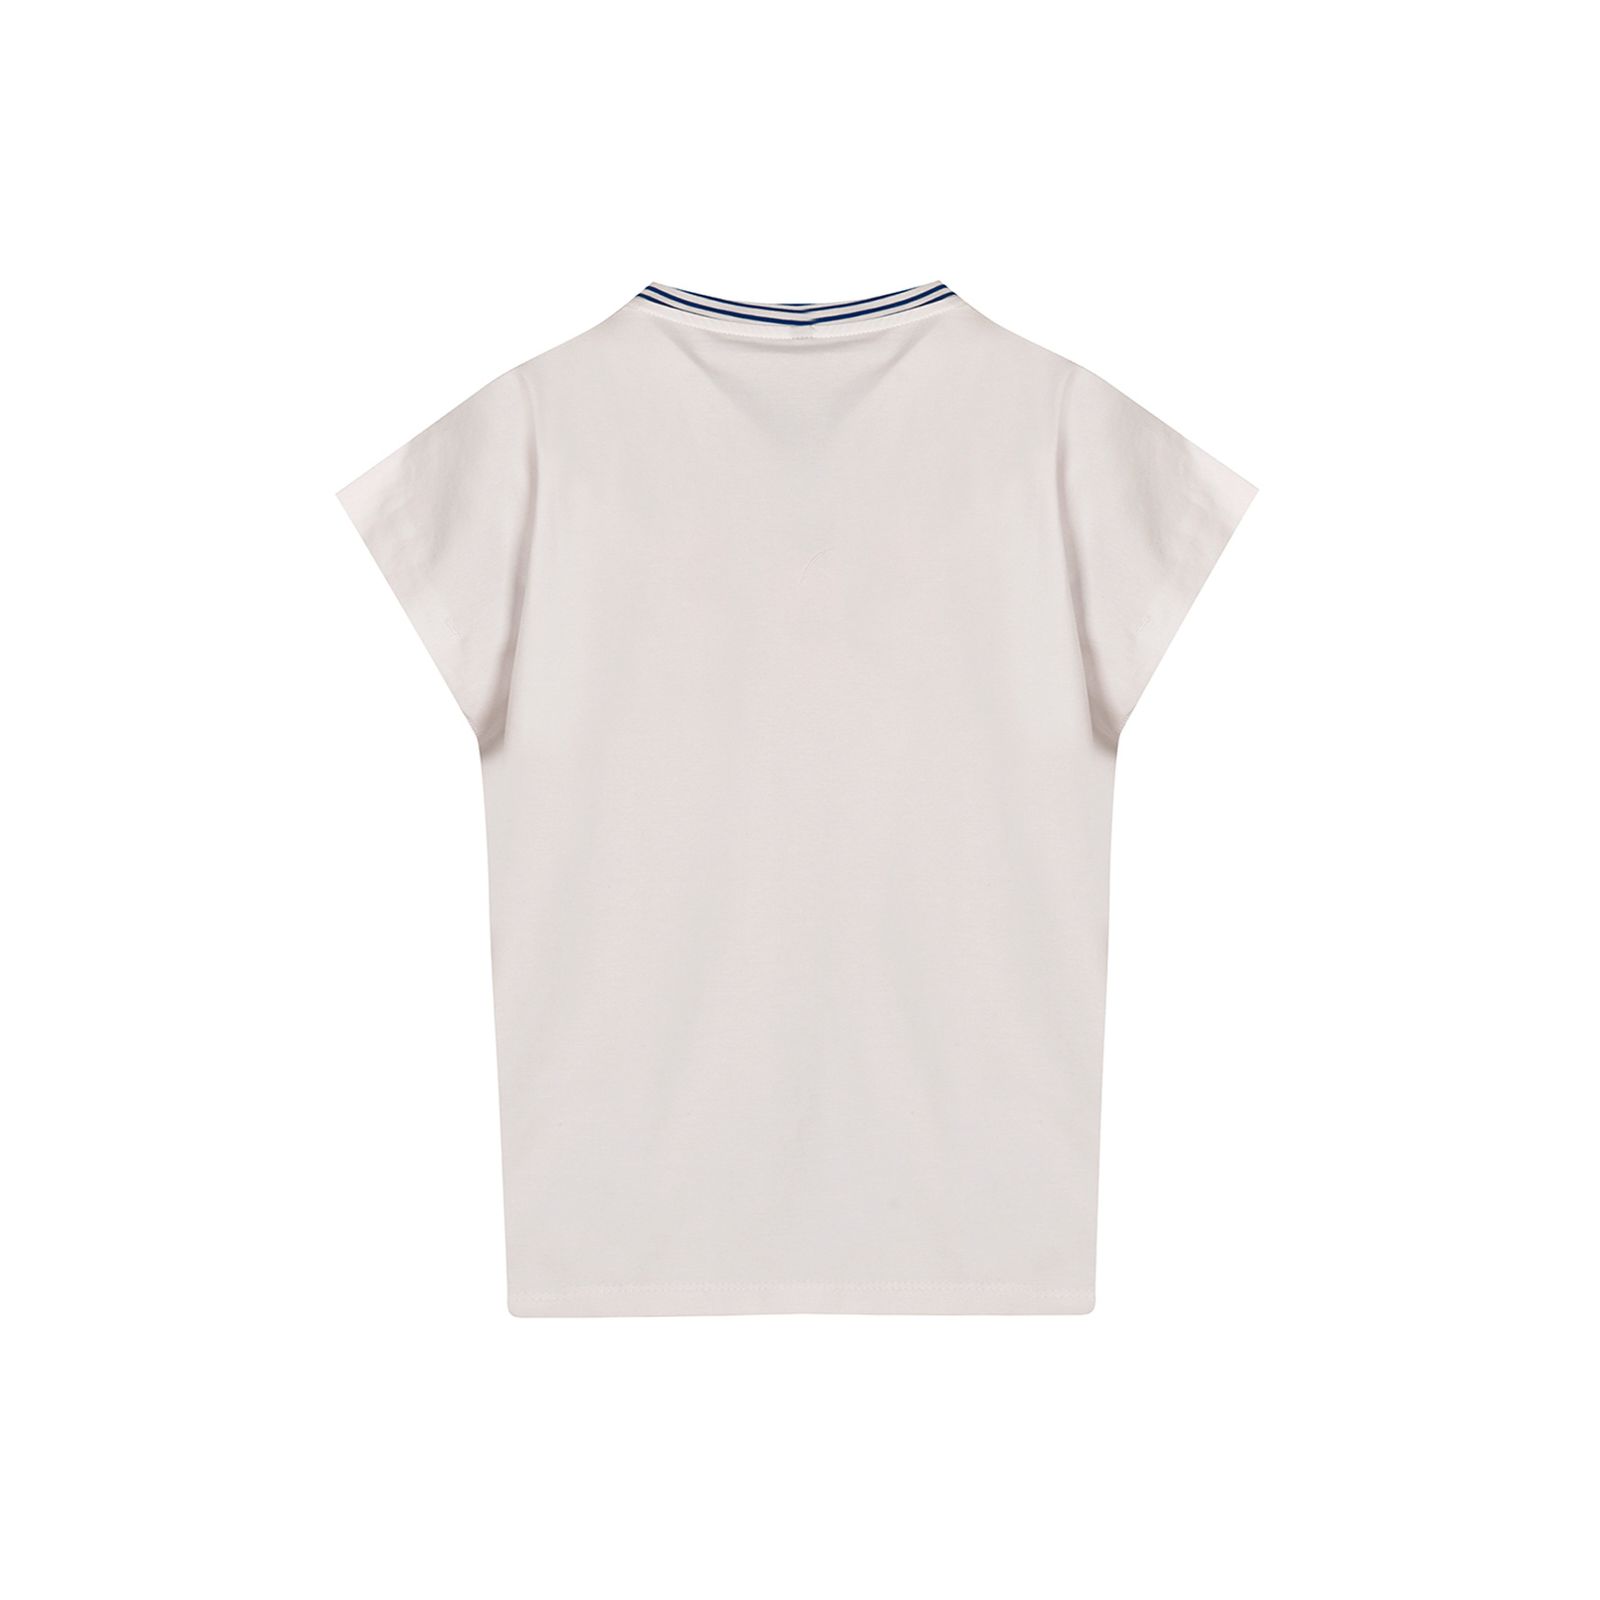 تی شرت آستین کوتاه زنانه بادی اسپینر مدل 3316 کد 1 رنگ سفید -  - 3